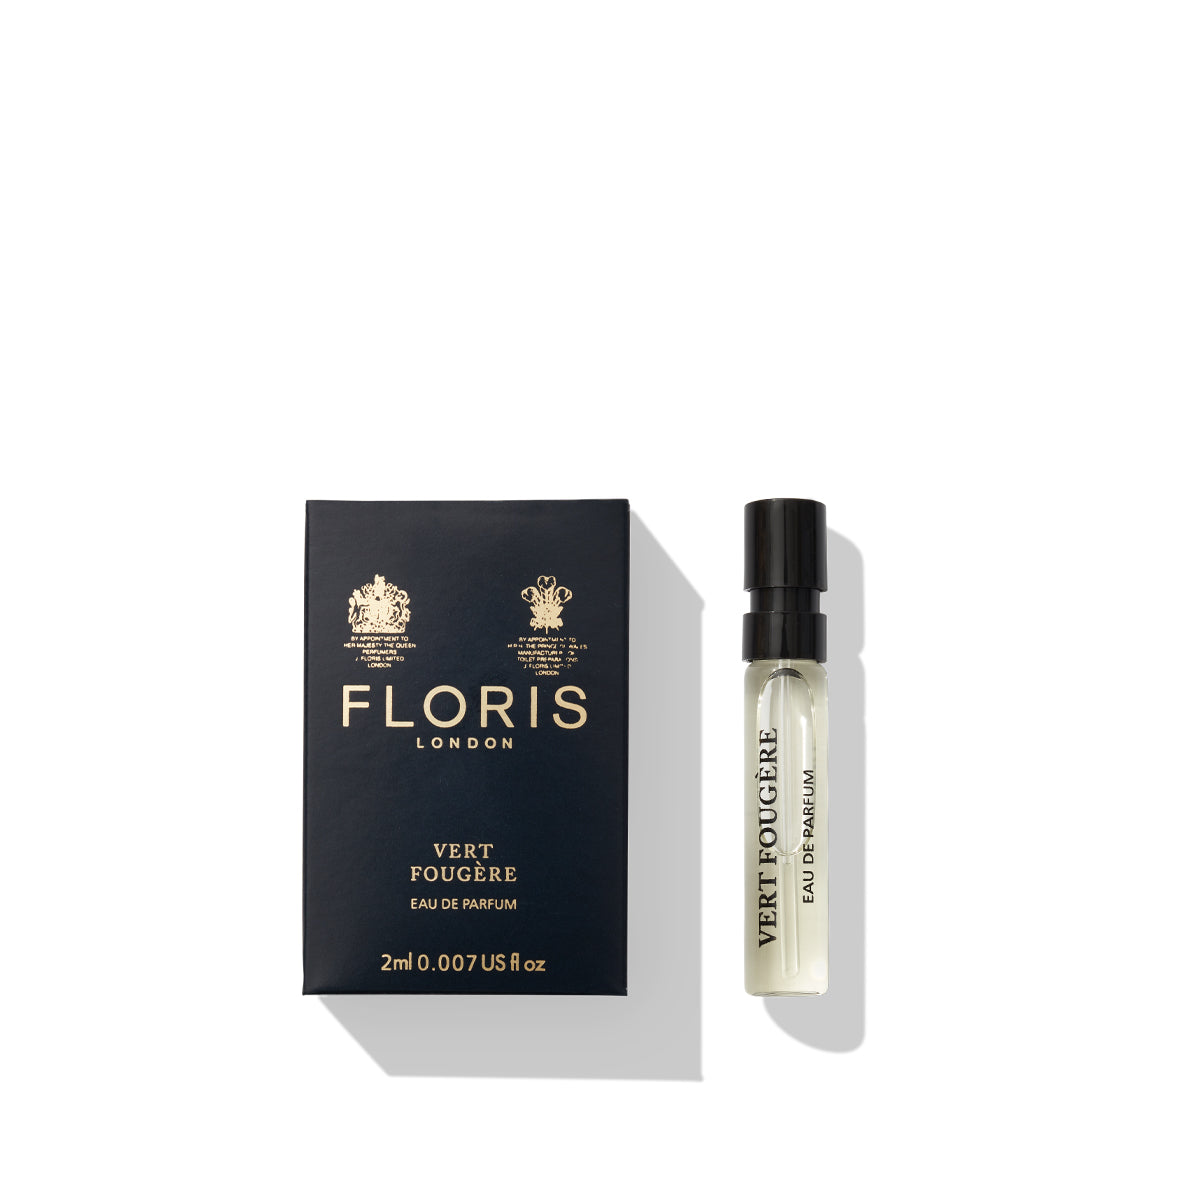 2ml sample vial of floris london vert fougere eau de parfum 